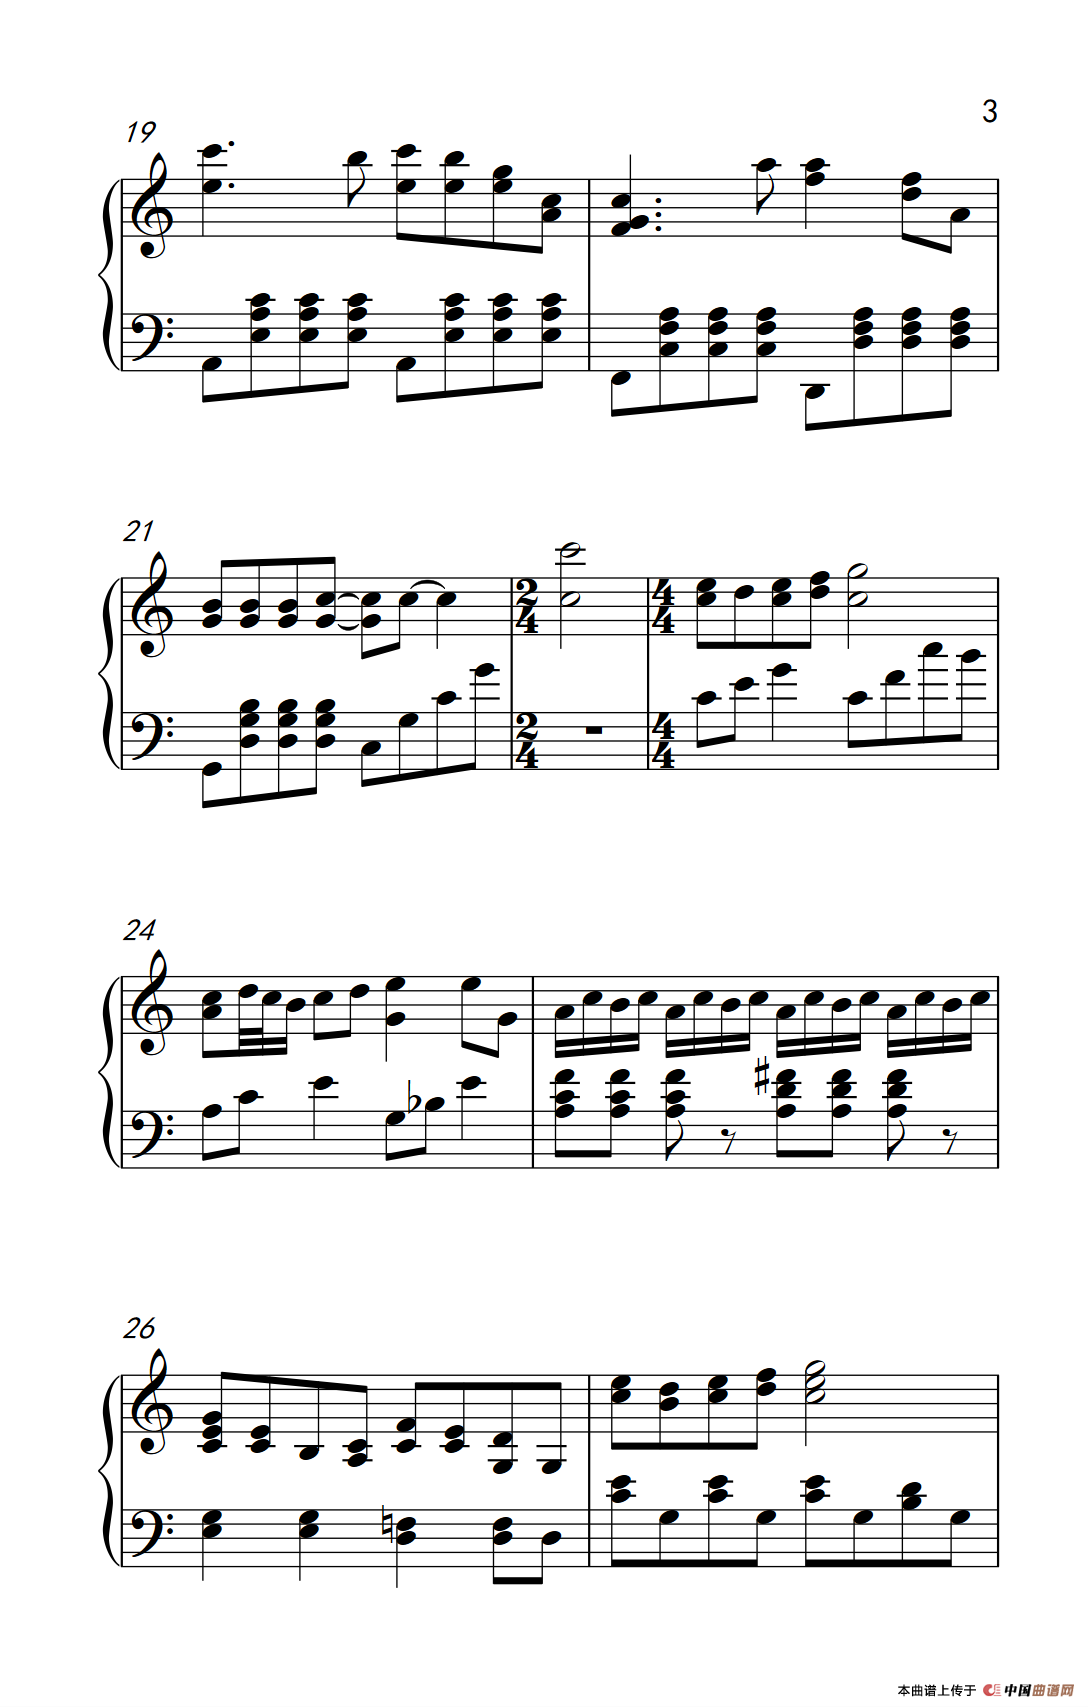 《黑白配》钢琴曲谱图分享